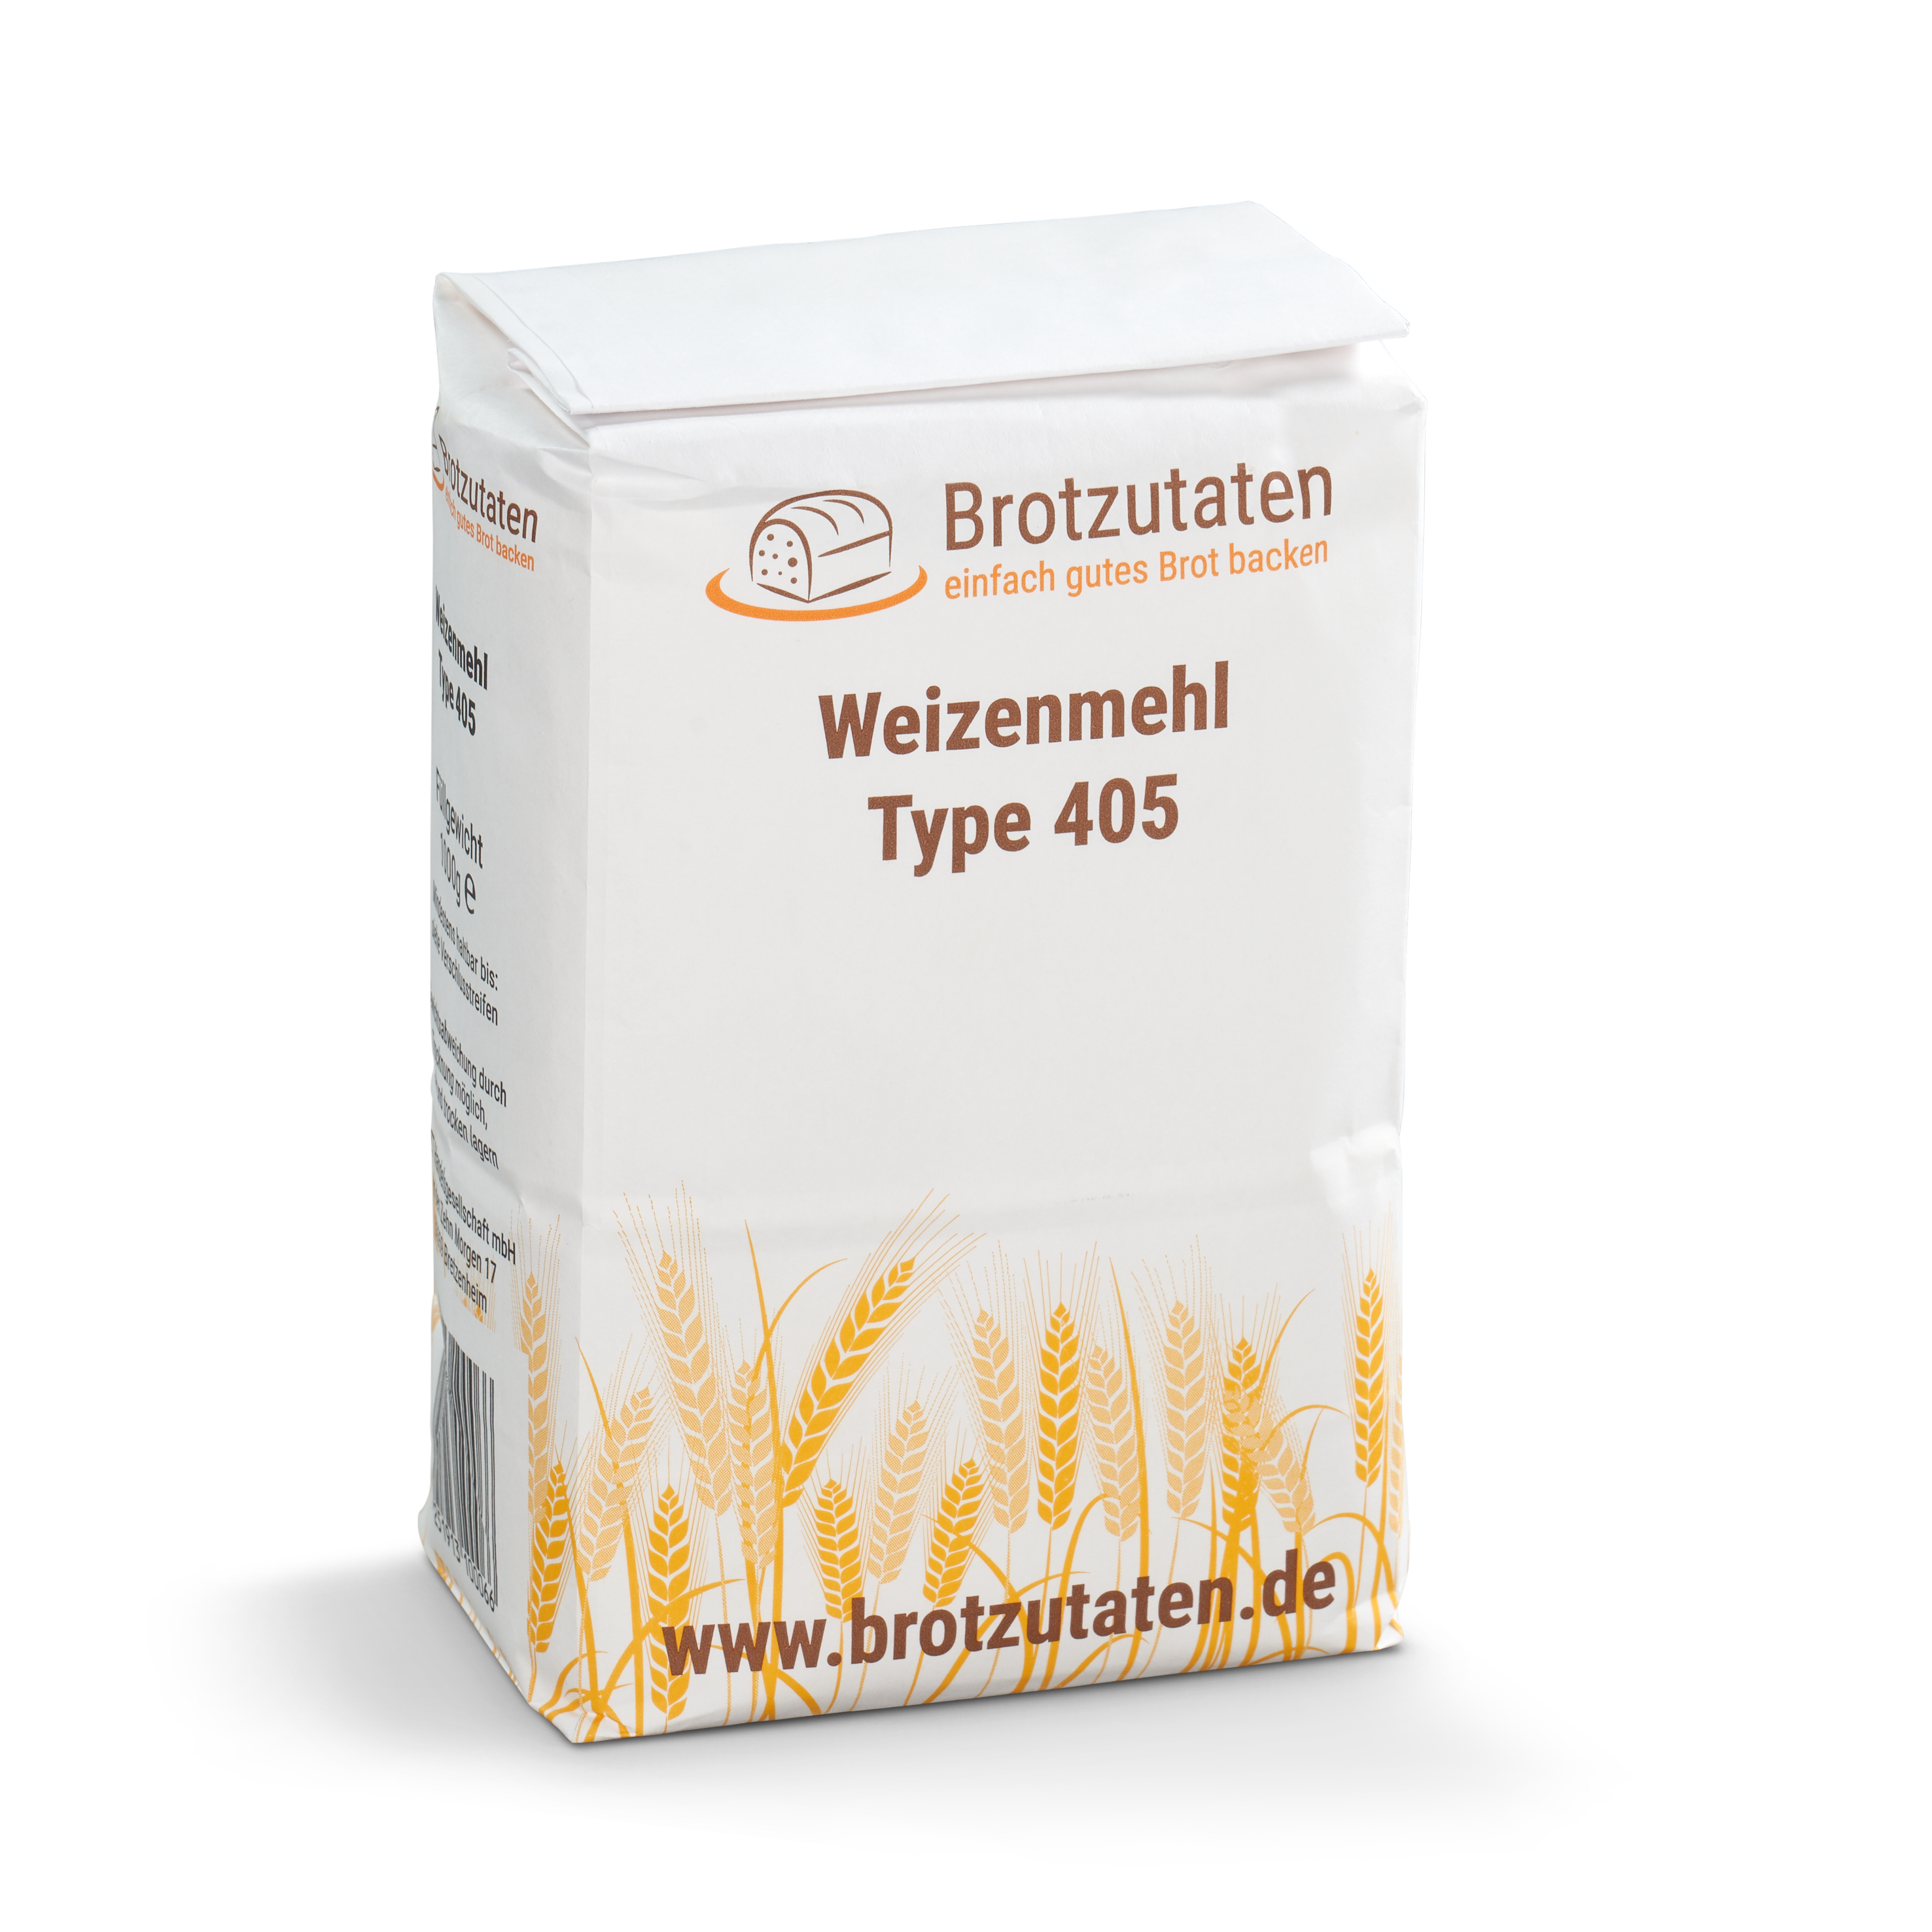 1kg Weizenmehl Type 405